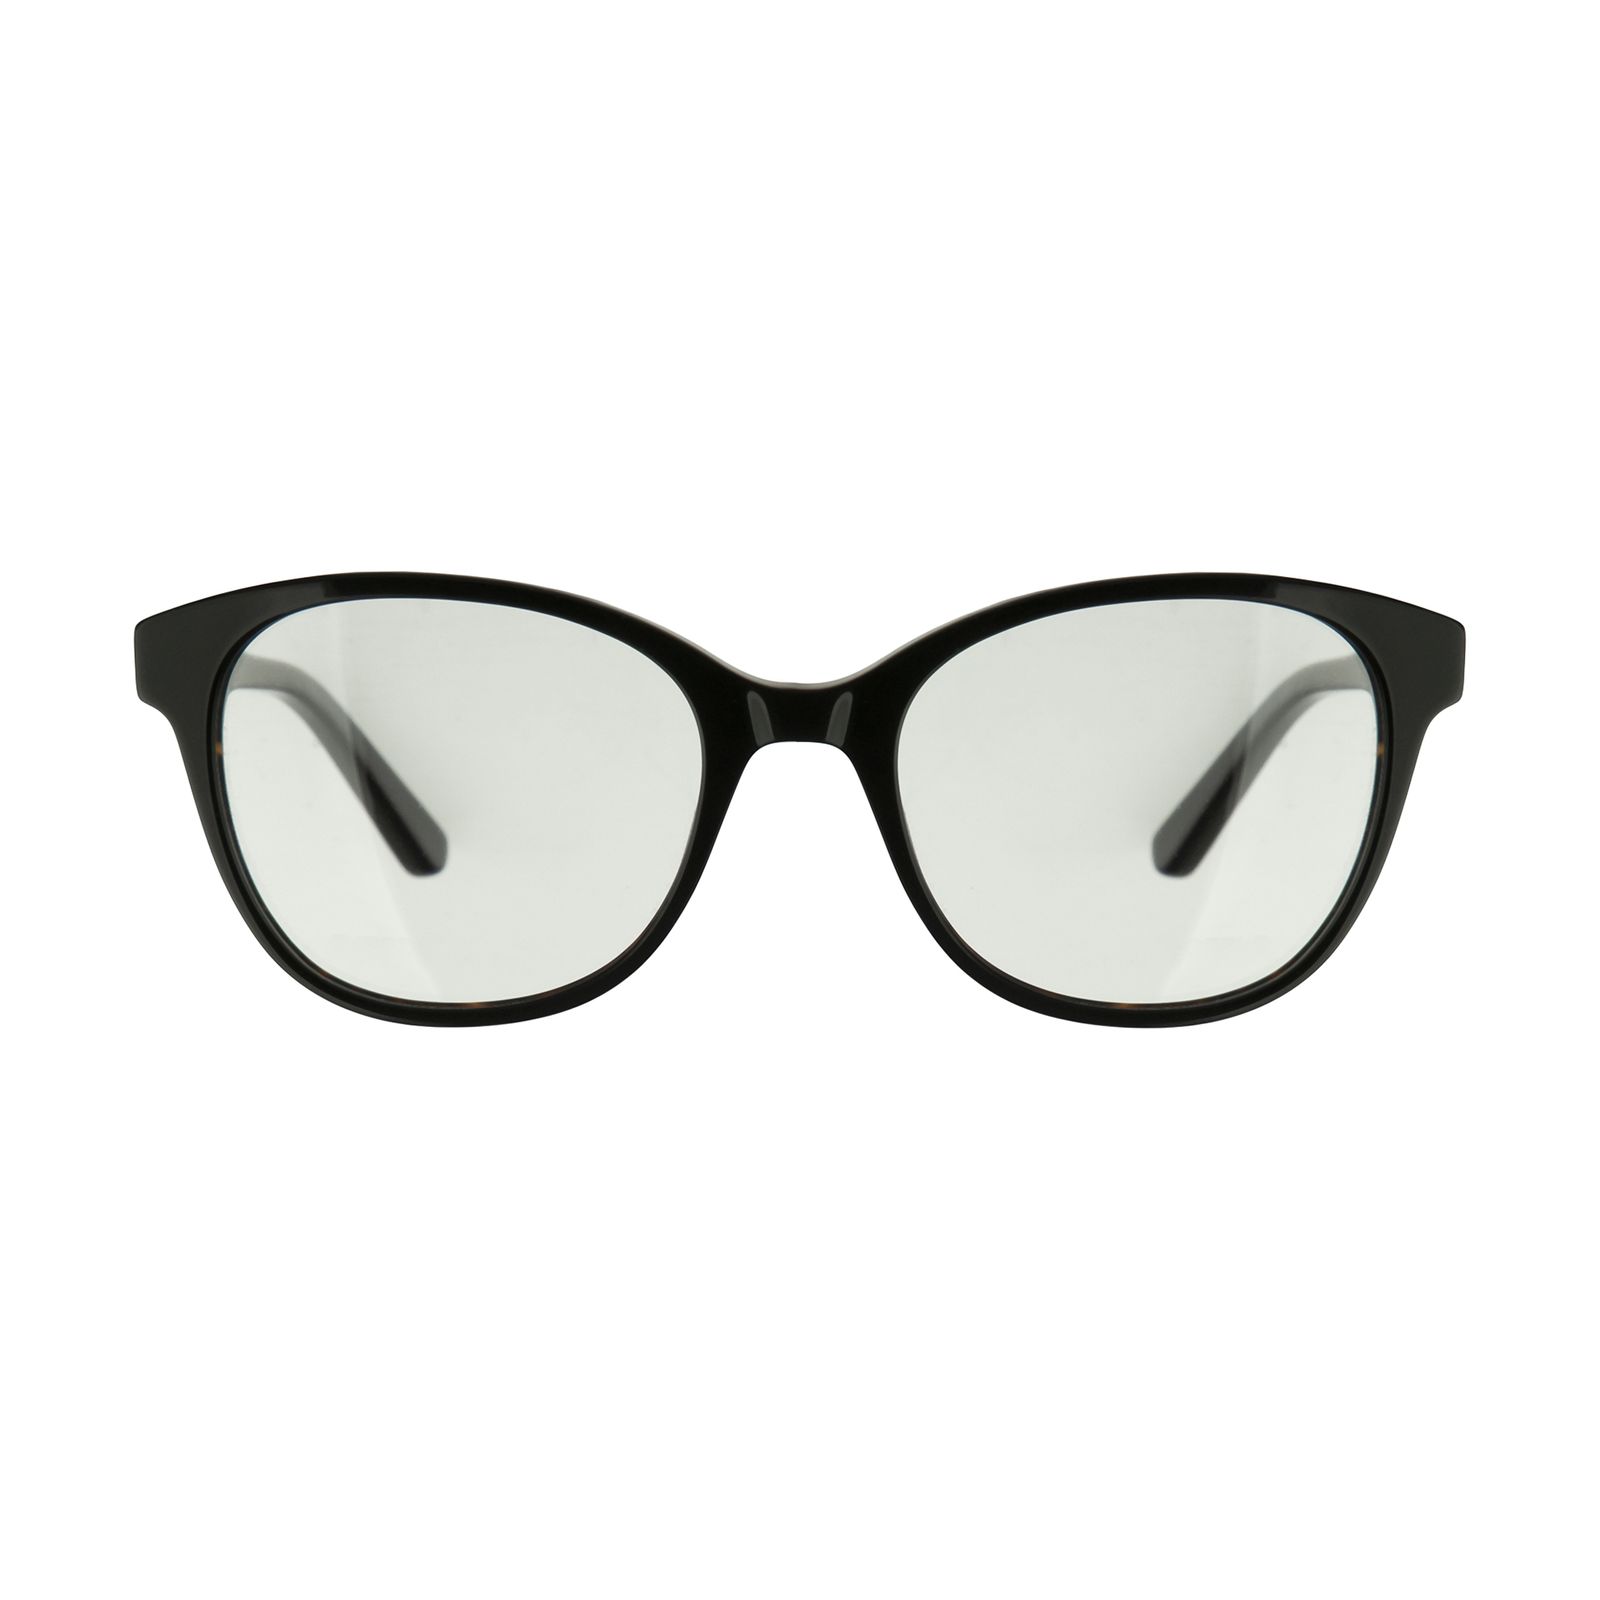 فریم عینک طبی کارل لاگرفلد مدل KL970V123 -  - 1